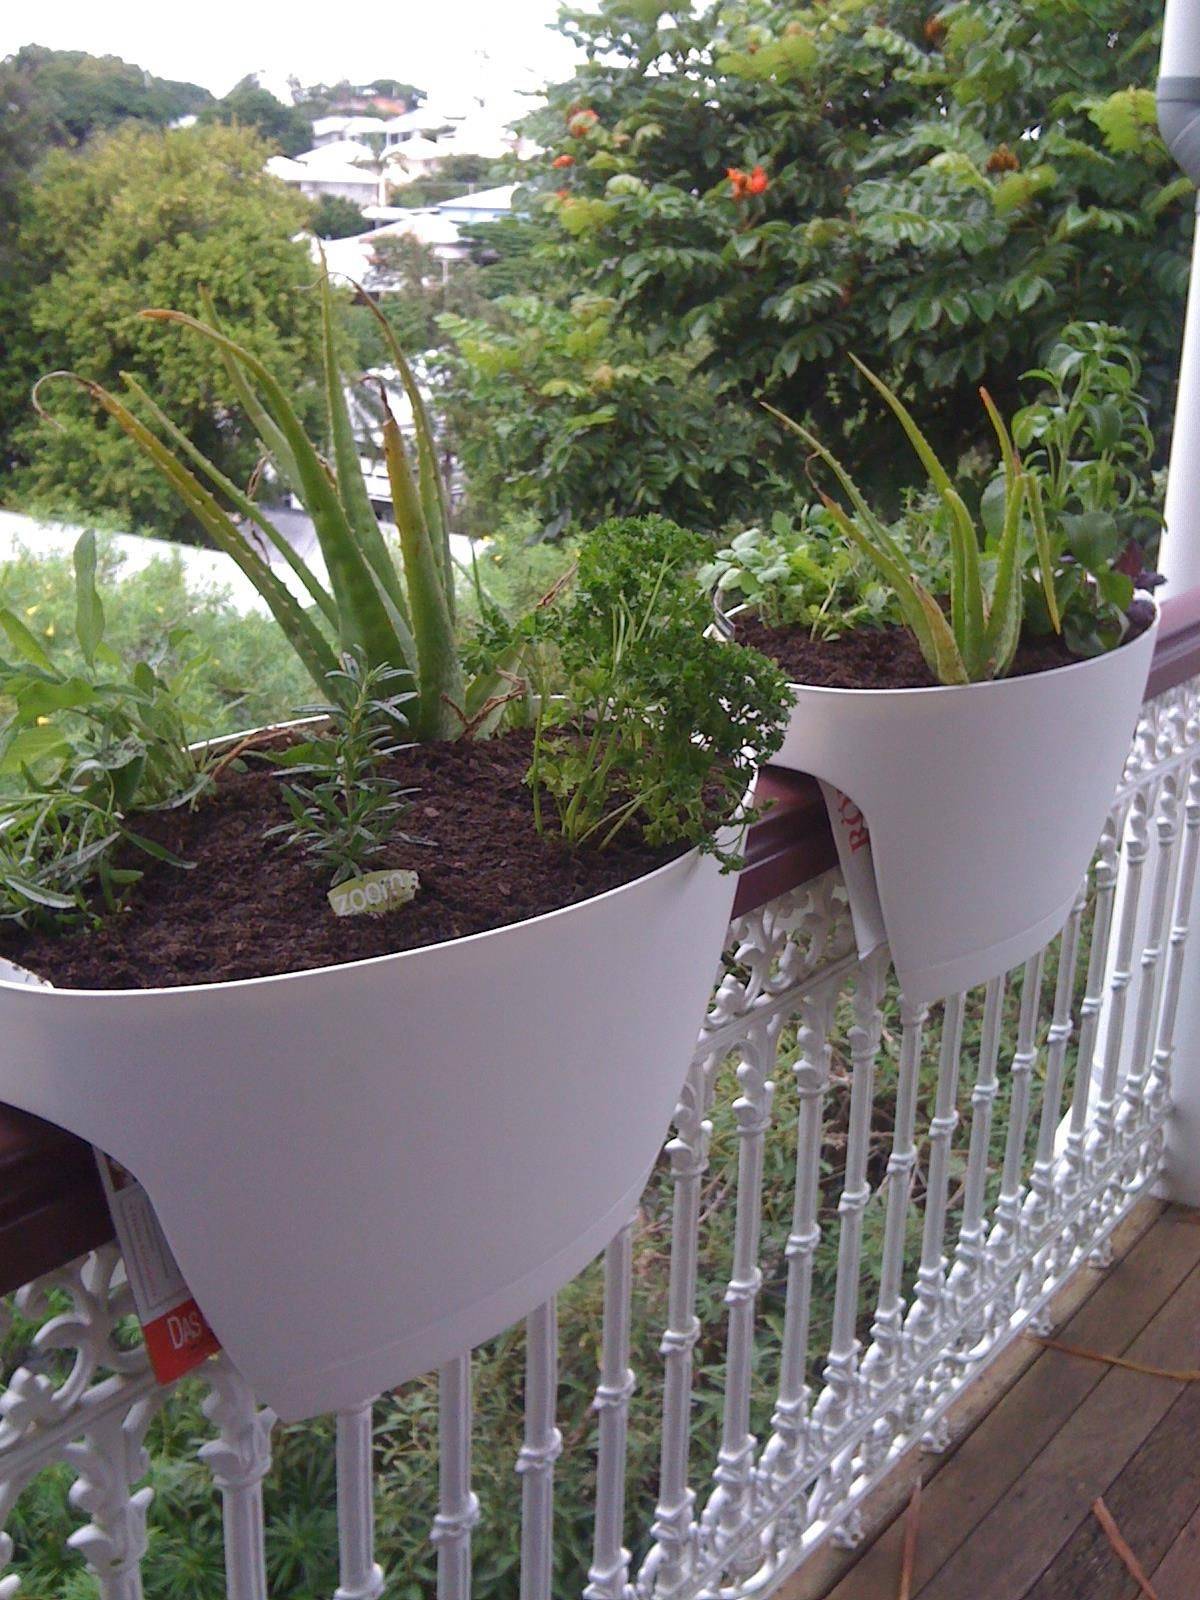 Balcony Herb Garden Ideas